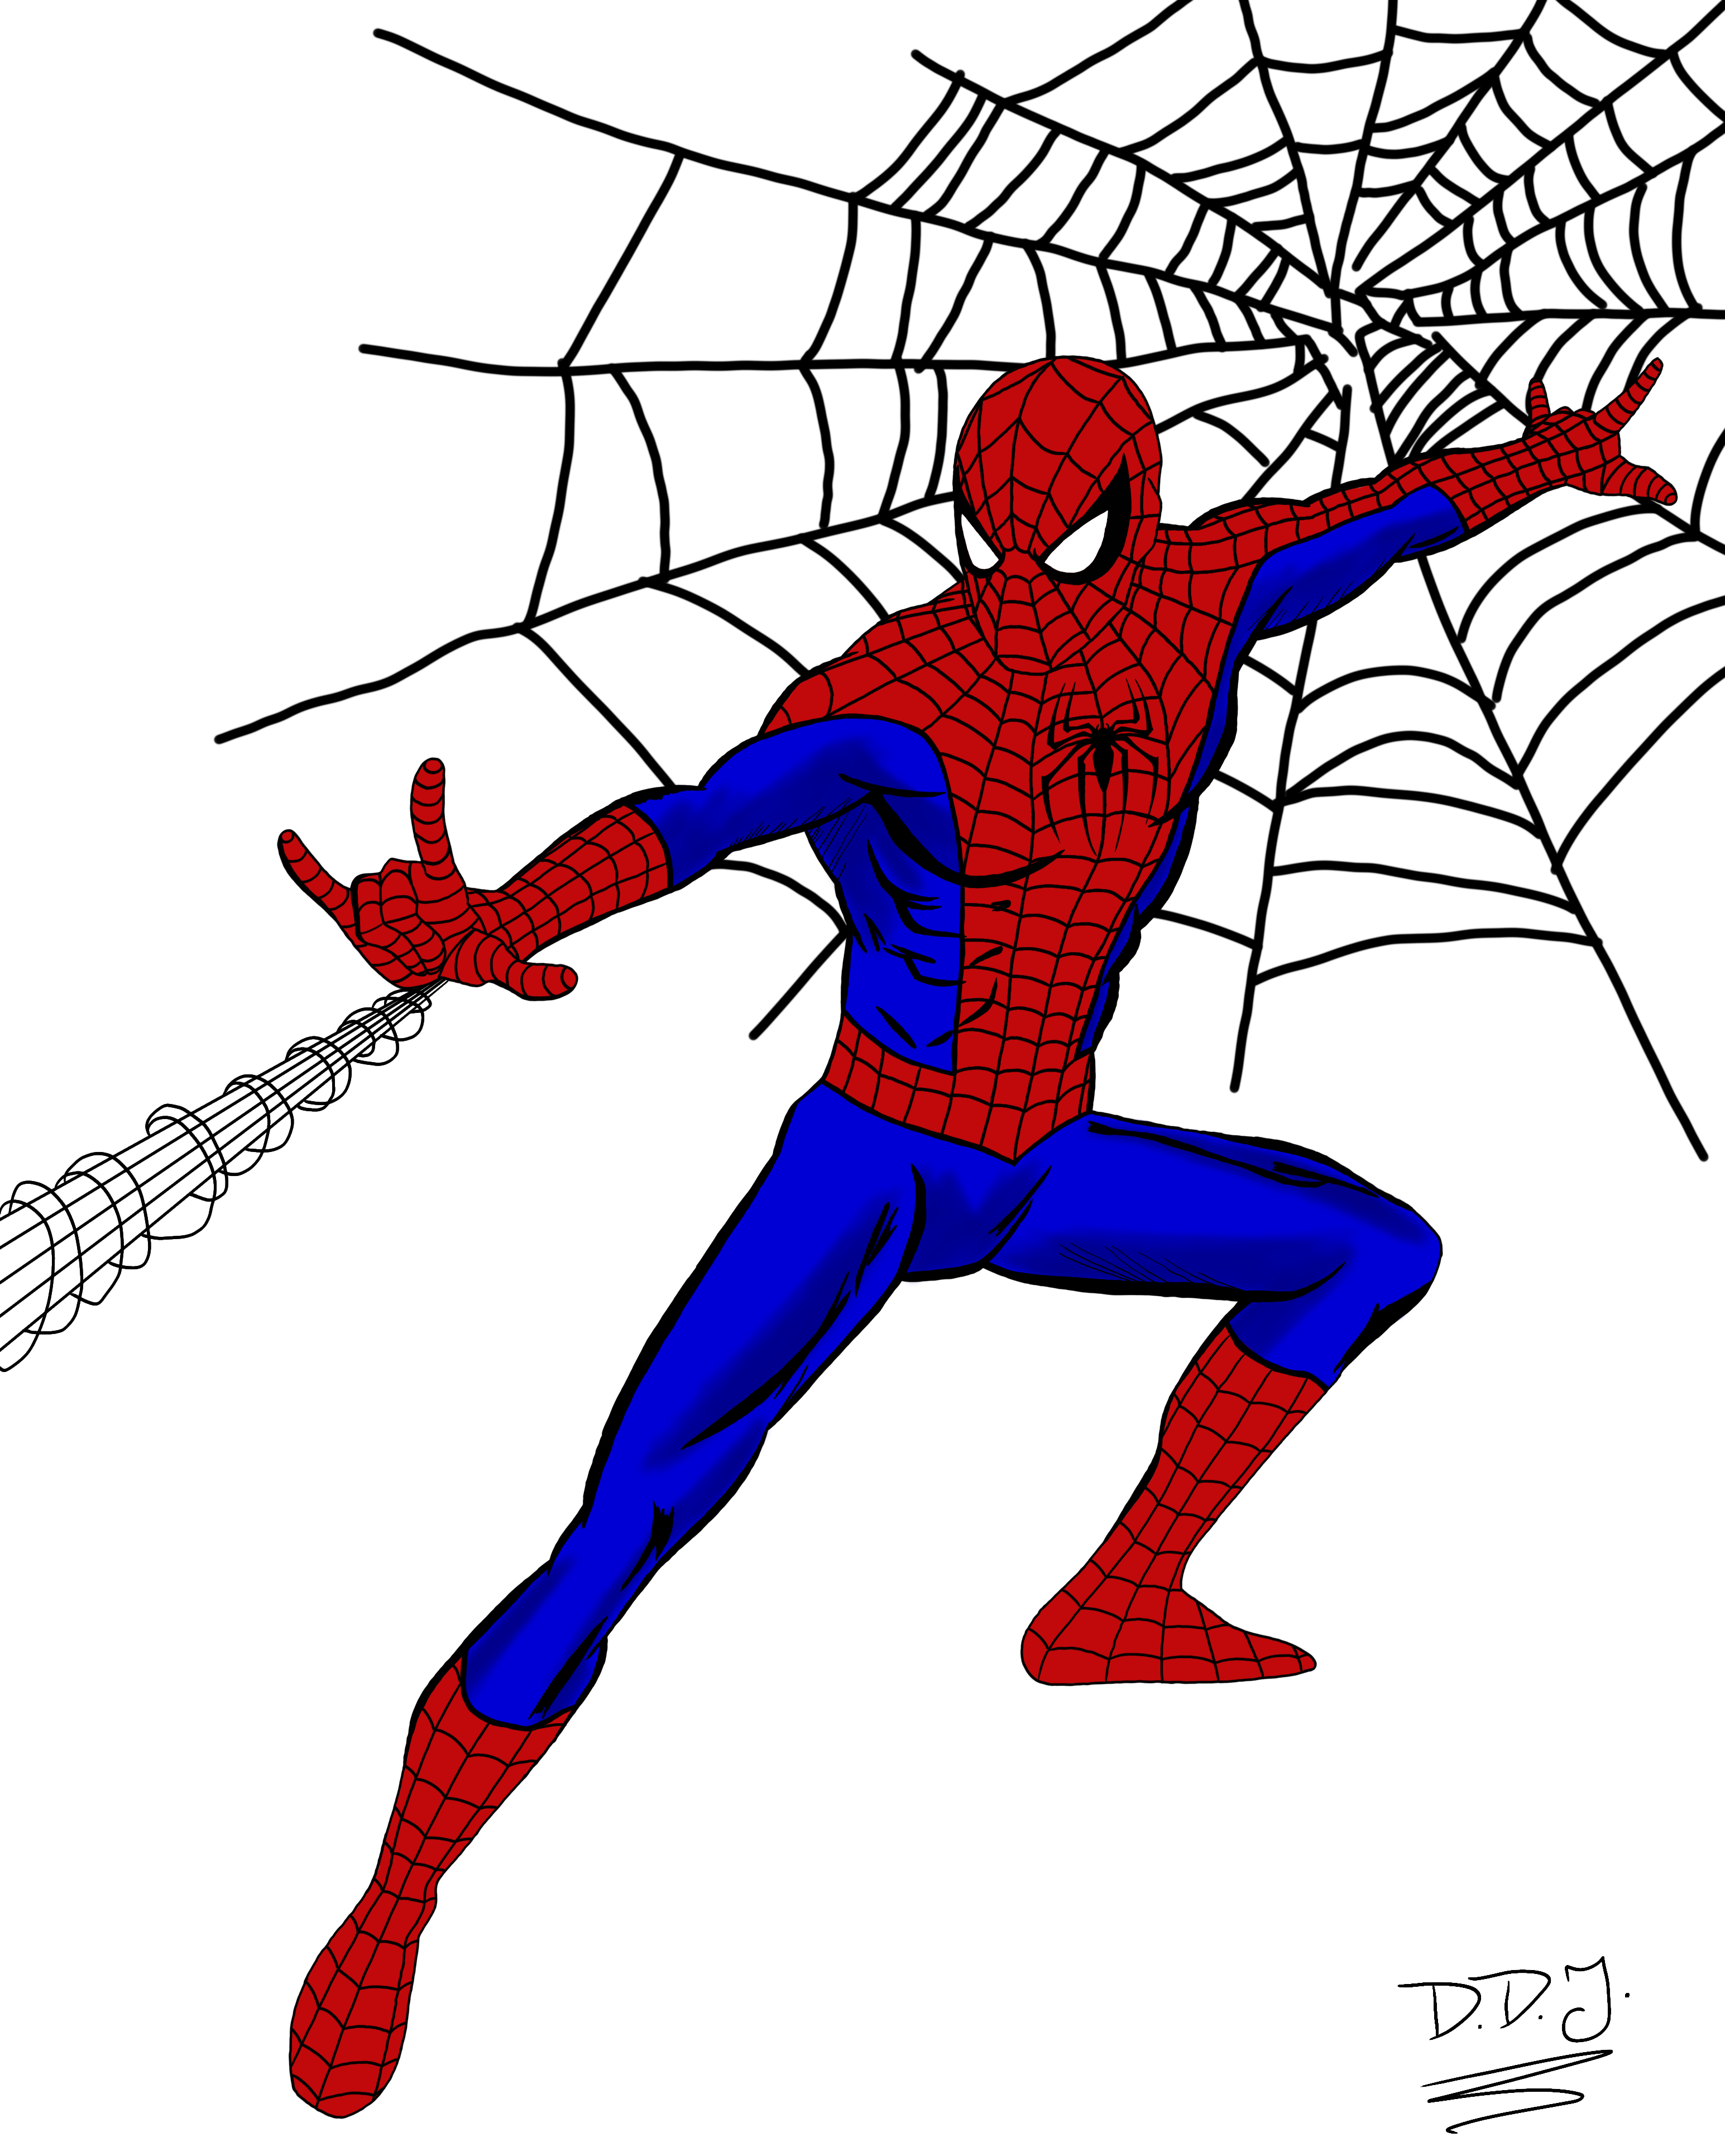 Spider-Man by ddjokerofficial on DeviantArt